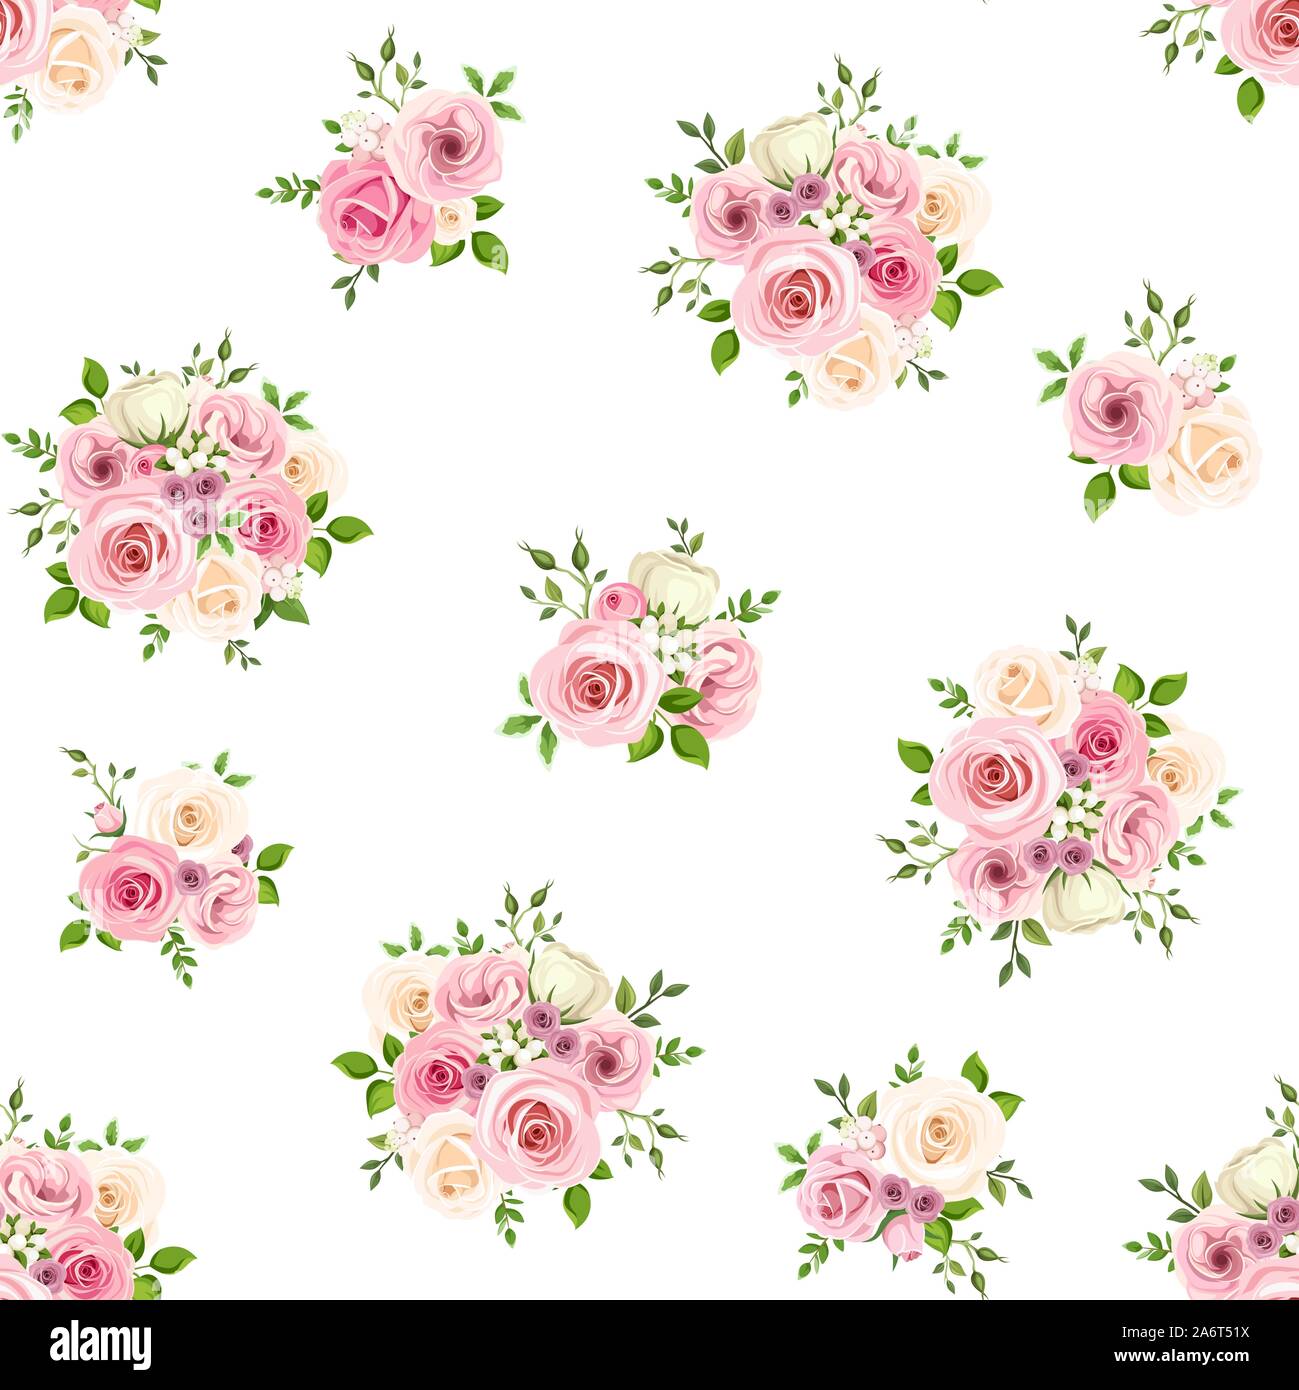 Vektor nahtlose Muster mit rosa und weißen Rosen auf einem weißen Hintergrund. Stock Vektor